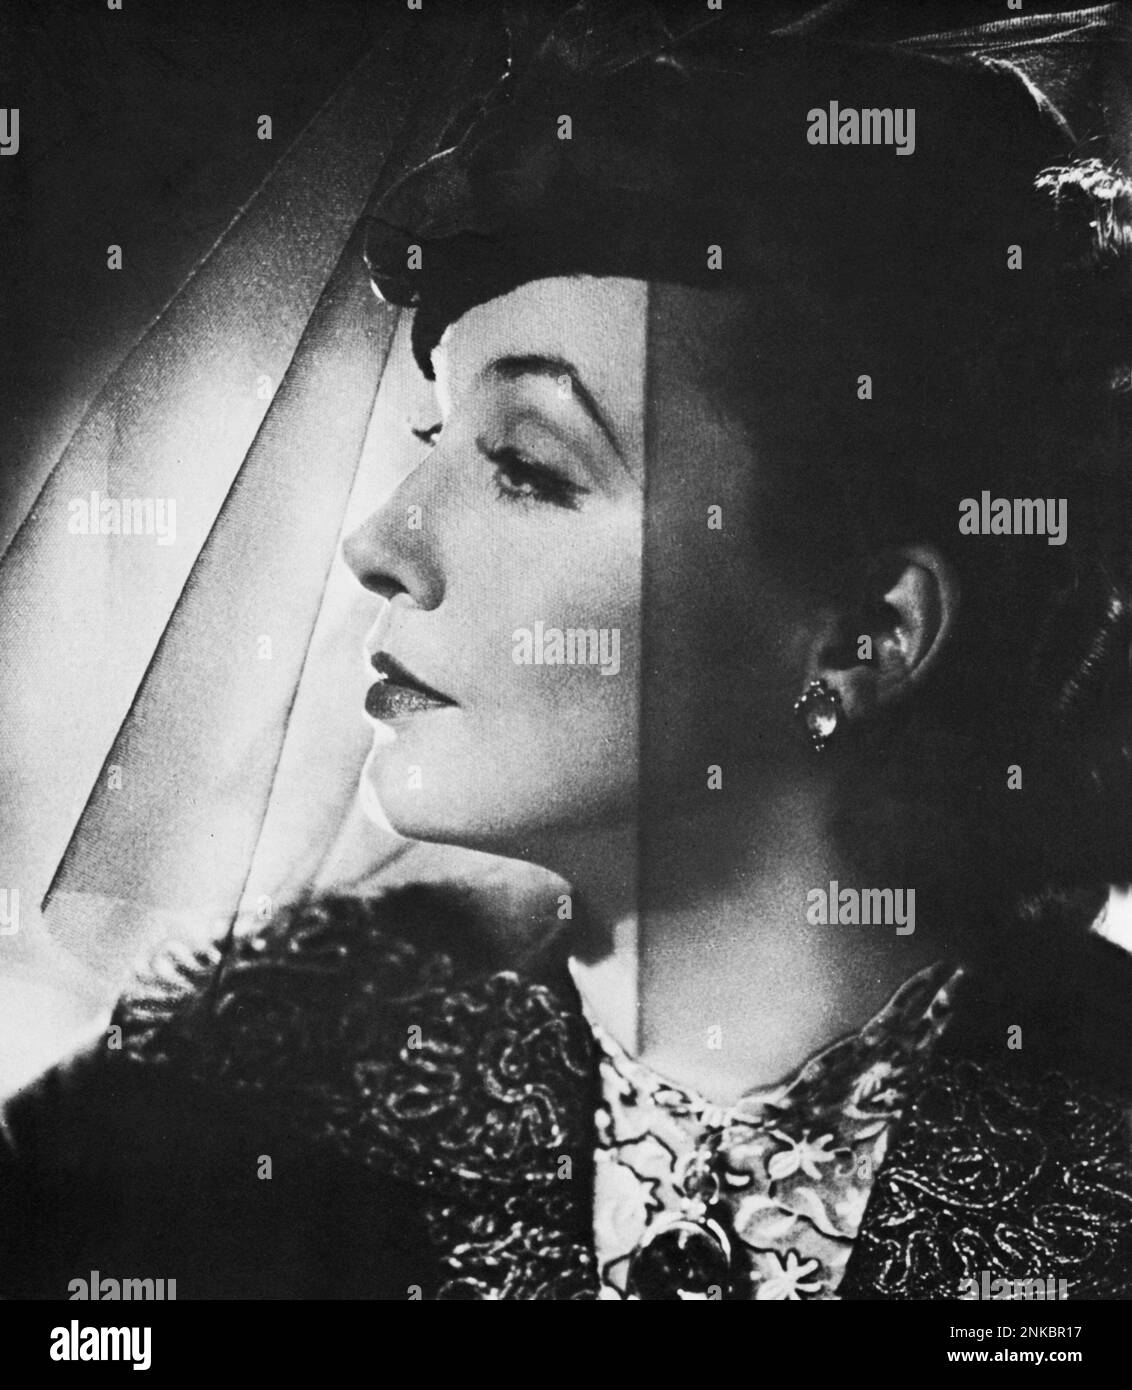 1936 c. : The Nazi Diva german singer and movie actress ZARAH LEANDER ( born Zarah Stina Hedberg , Karlstad , Sweden 15 mars 1907 - Stockholm , Sweden 23 june 1981 ) - MOVIE - CINEMA - CANTANTE - NAZIST - NAZISMO - WWII - SECONDA GUERRA MONDIALE - portrait - ritratto  - veletta - veil - cappello - hat - orecchini - earrings - eardrops - profilo - profile  ----  Archivio GBB Stock Photo